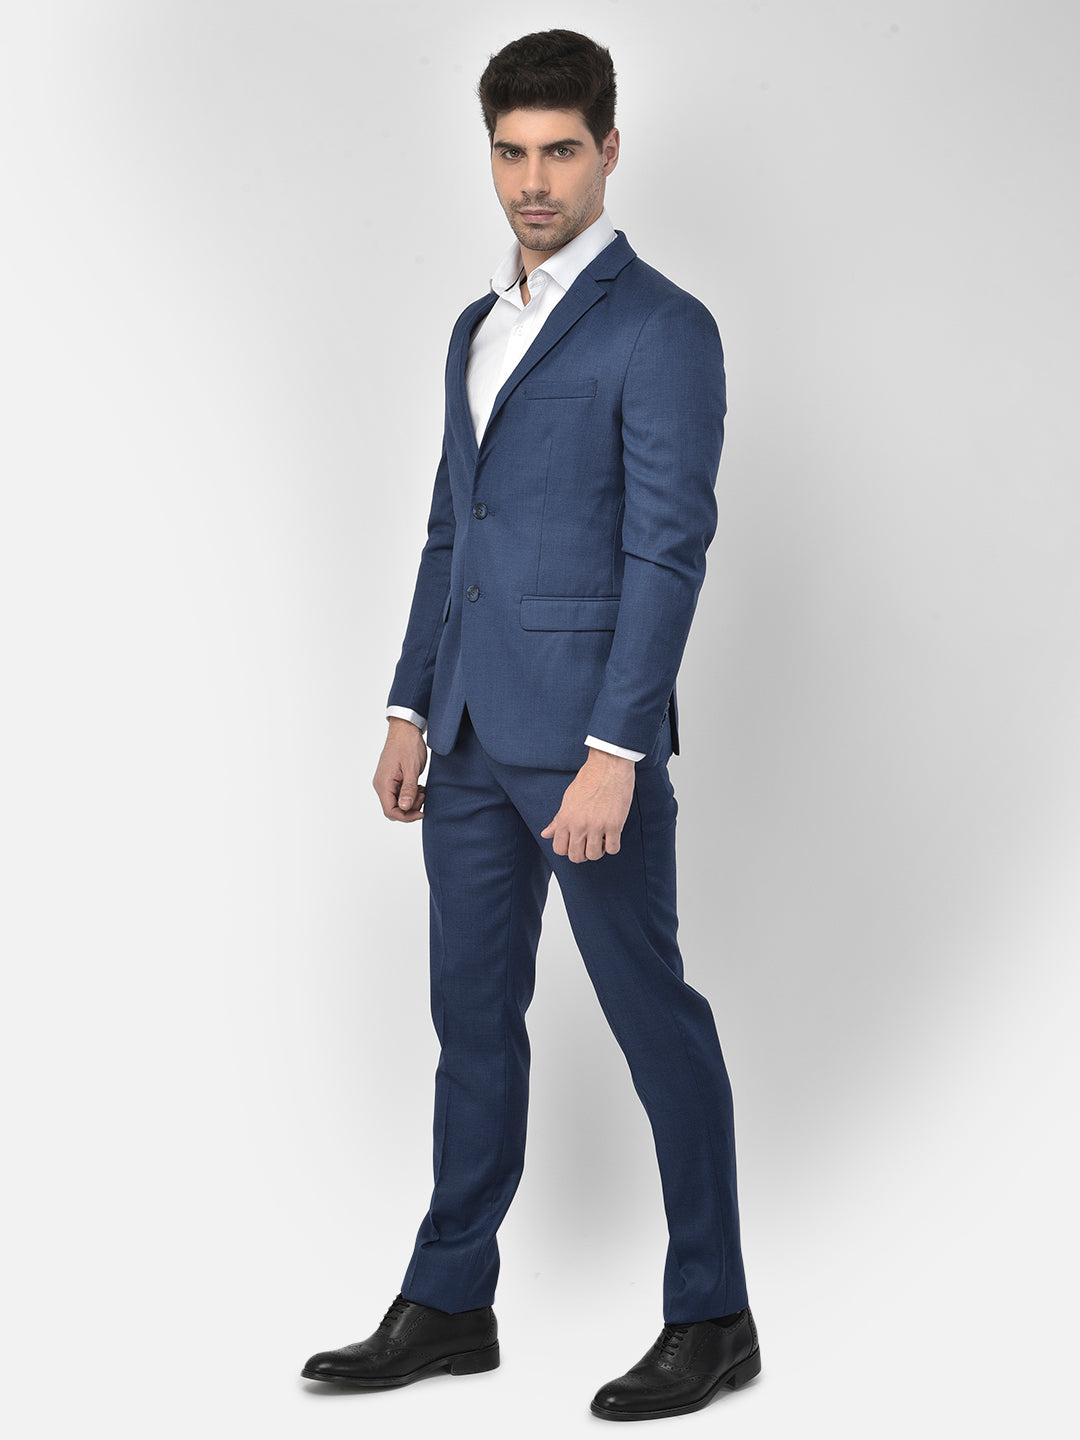 Blue Suit - Men Suits